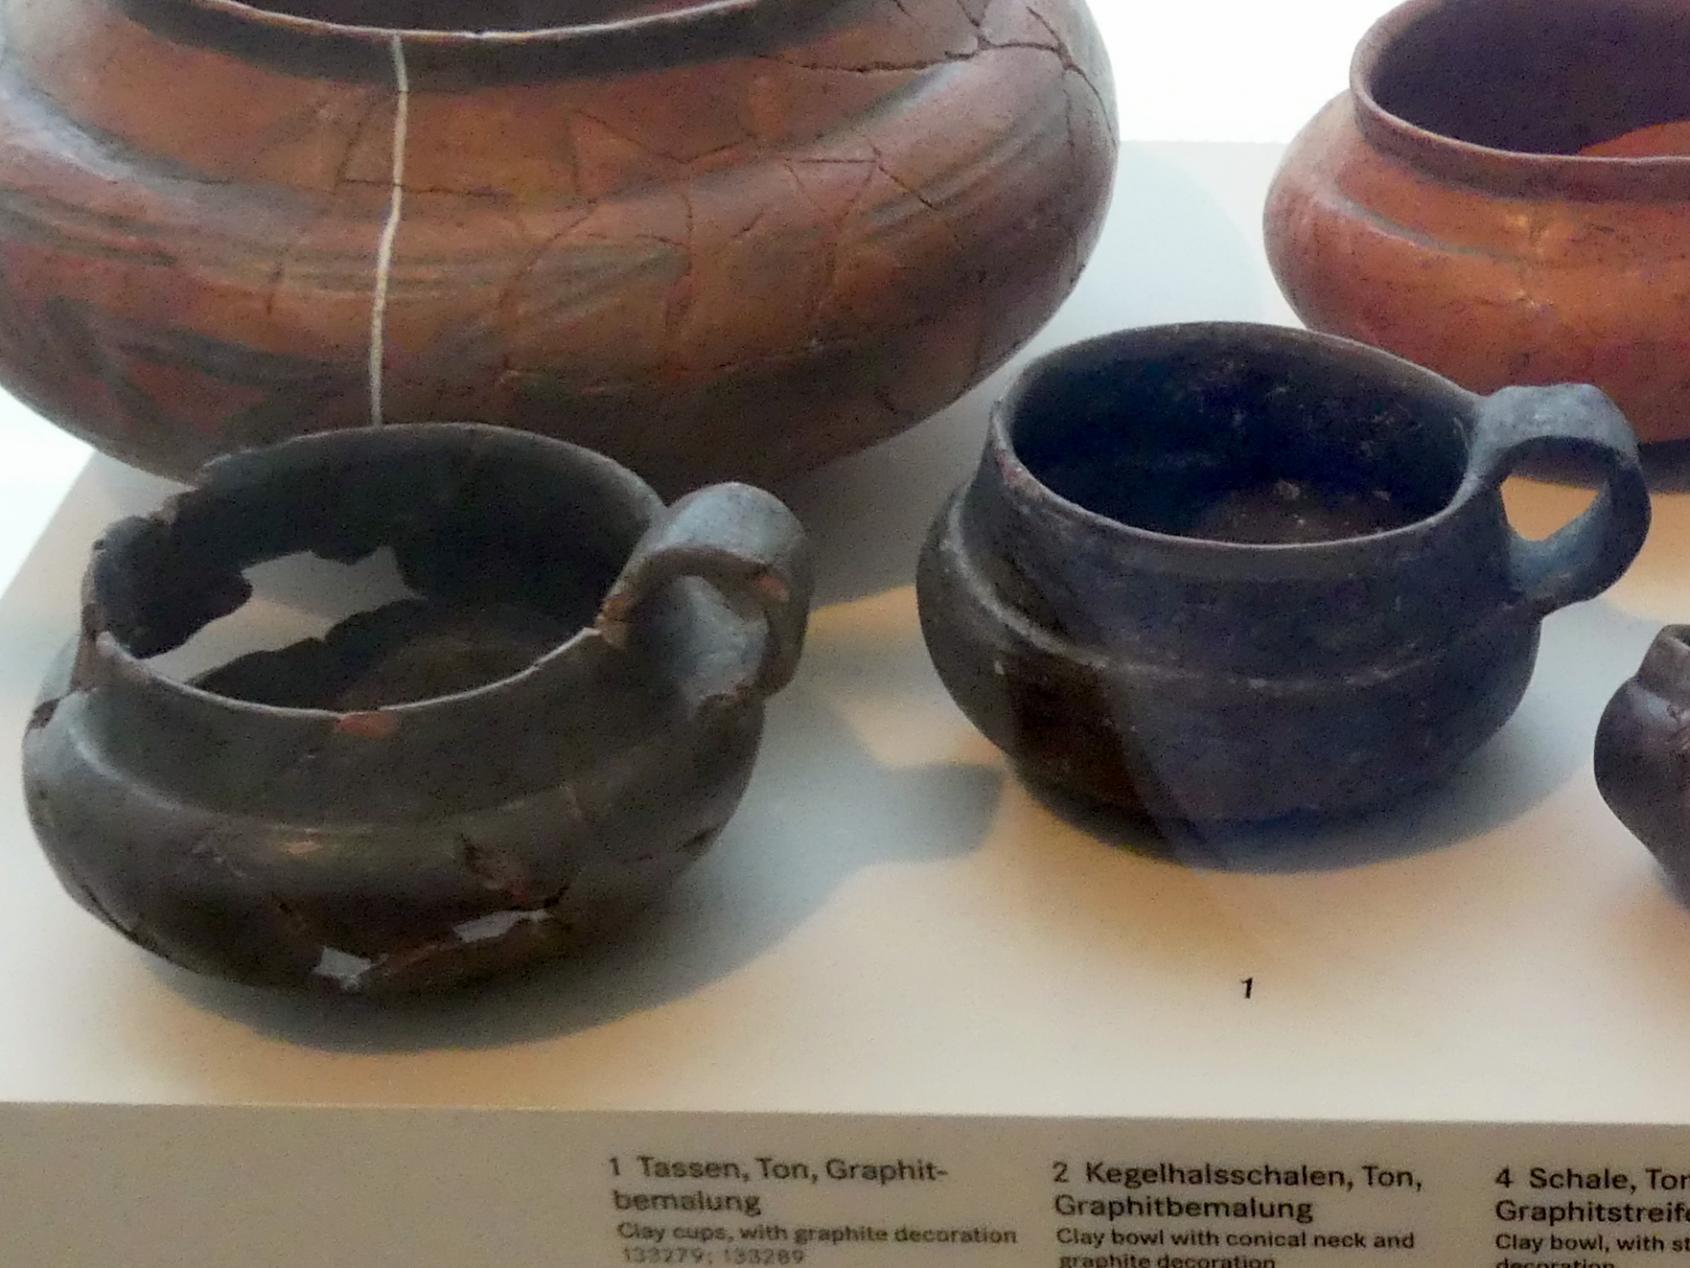 Tassen, Hallstattzeit, 700 - 200 v. Chr.